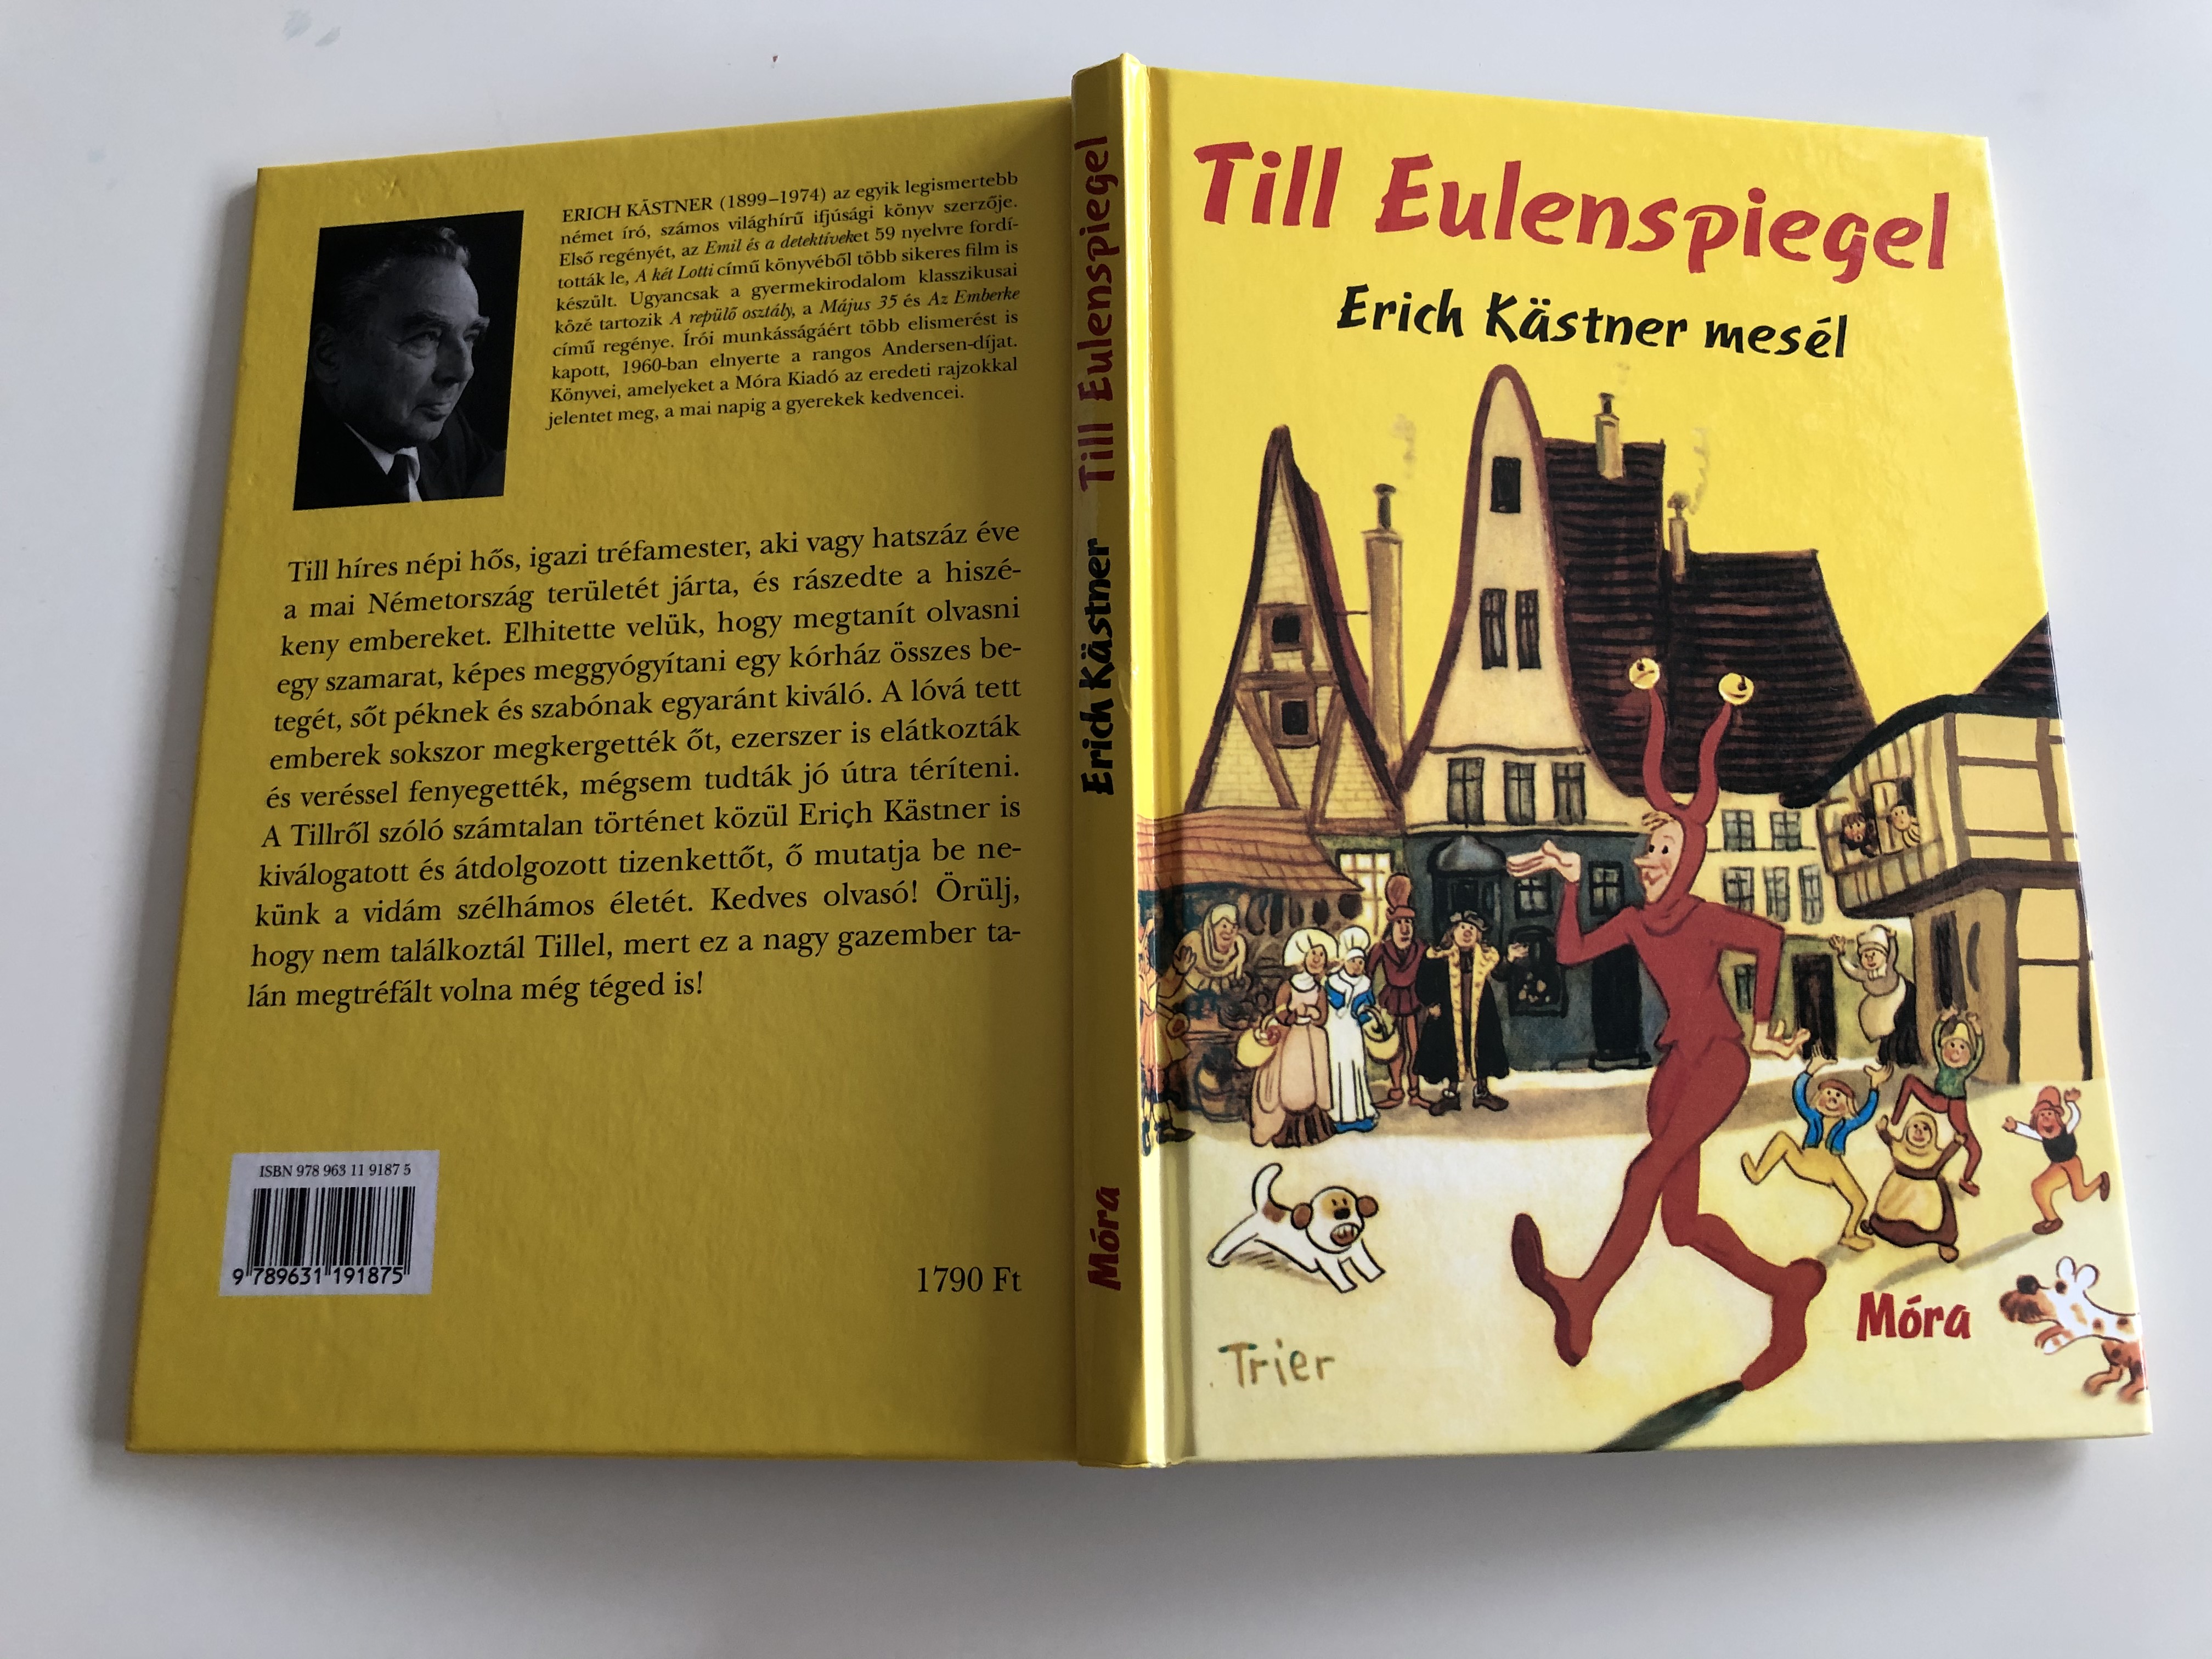 Till Eulenspiegel by Erich Kästner 1.JPG